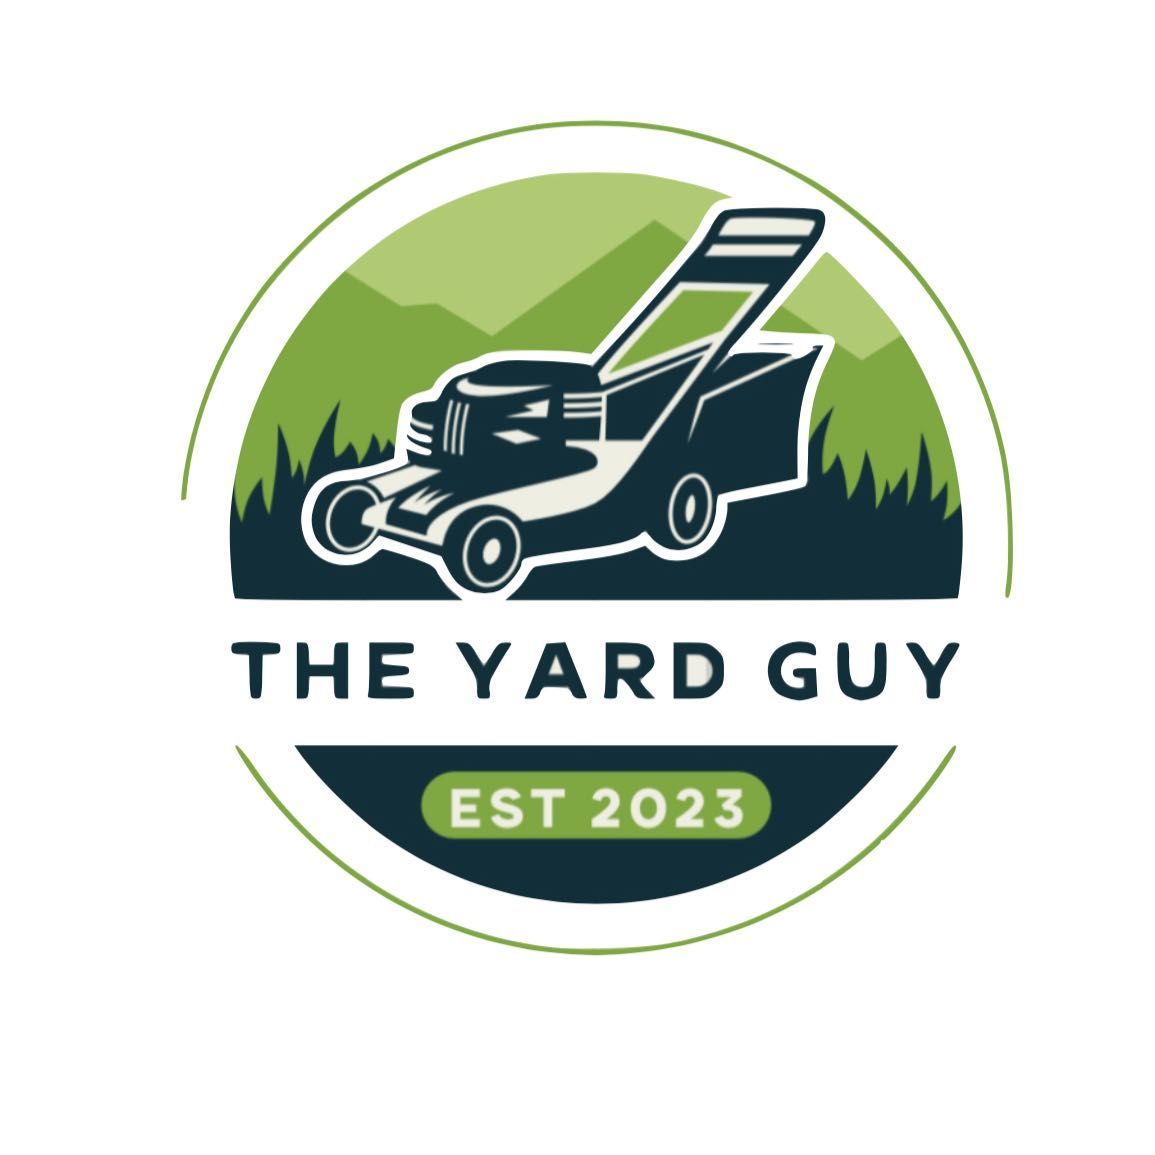 The yard guy, New Braunfels, 78130